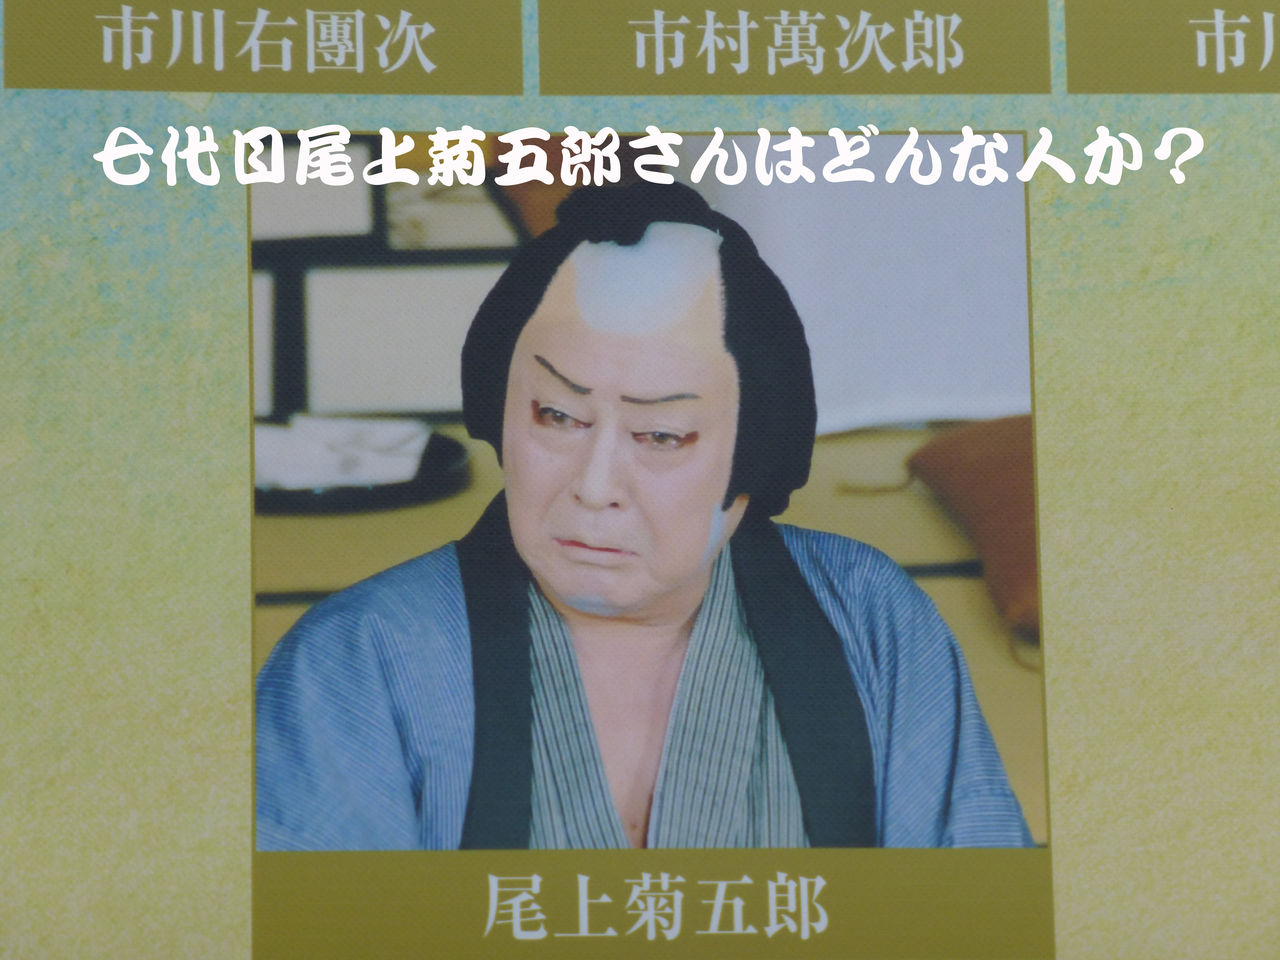 歌舞伎 七代目尾上菊五郎さんを知るための1冊 通勤時間の本は何にする